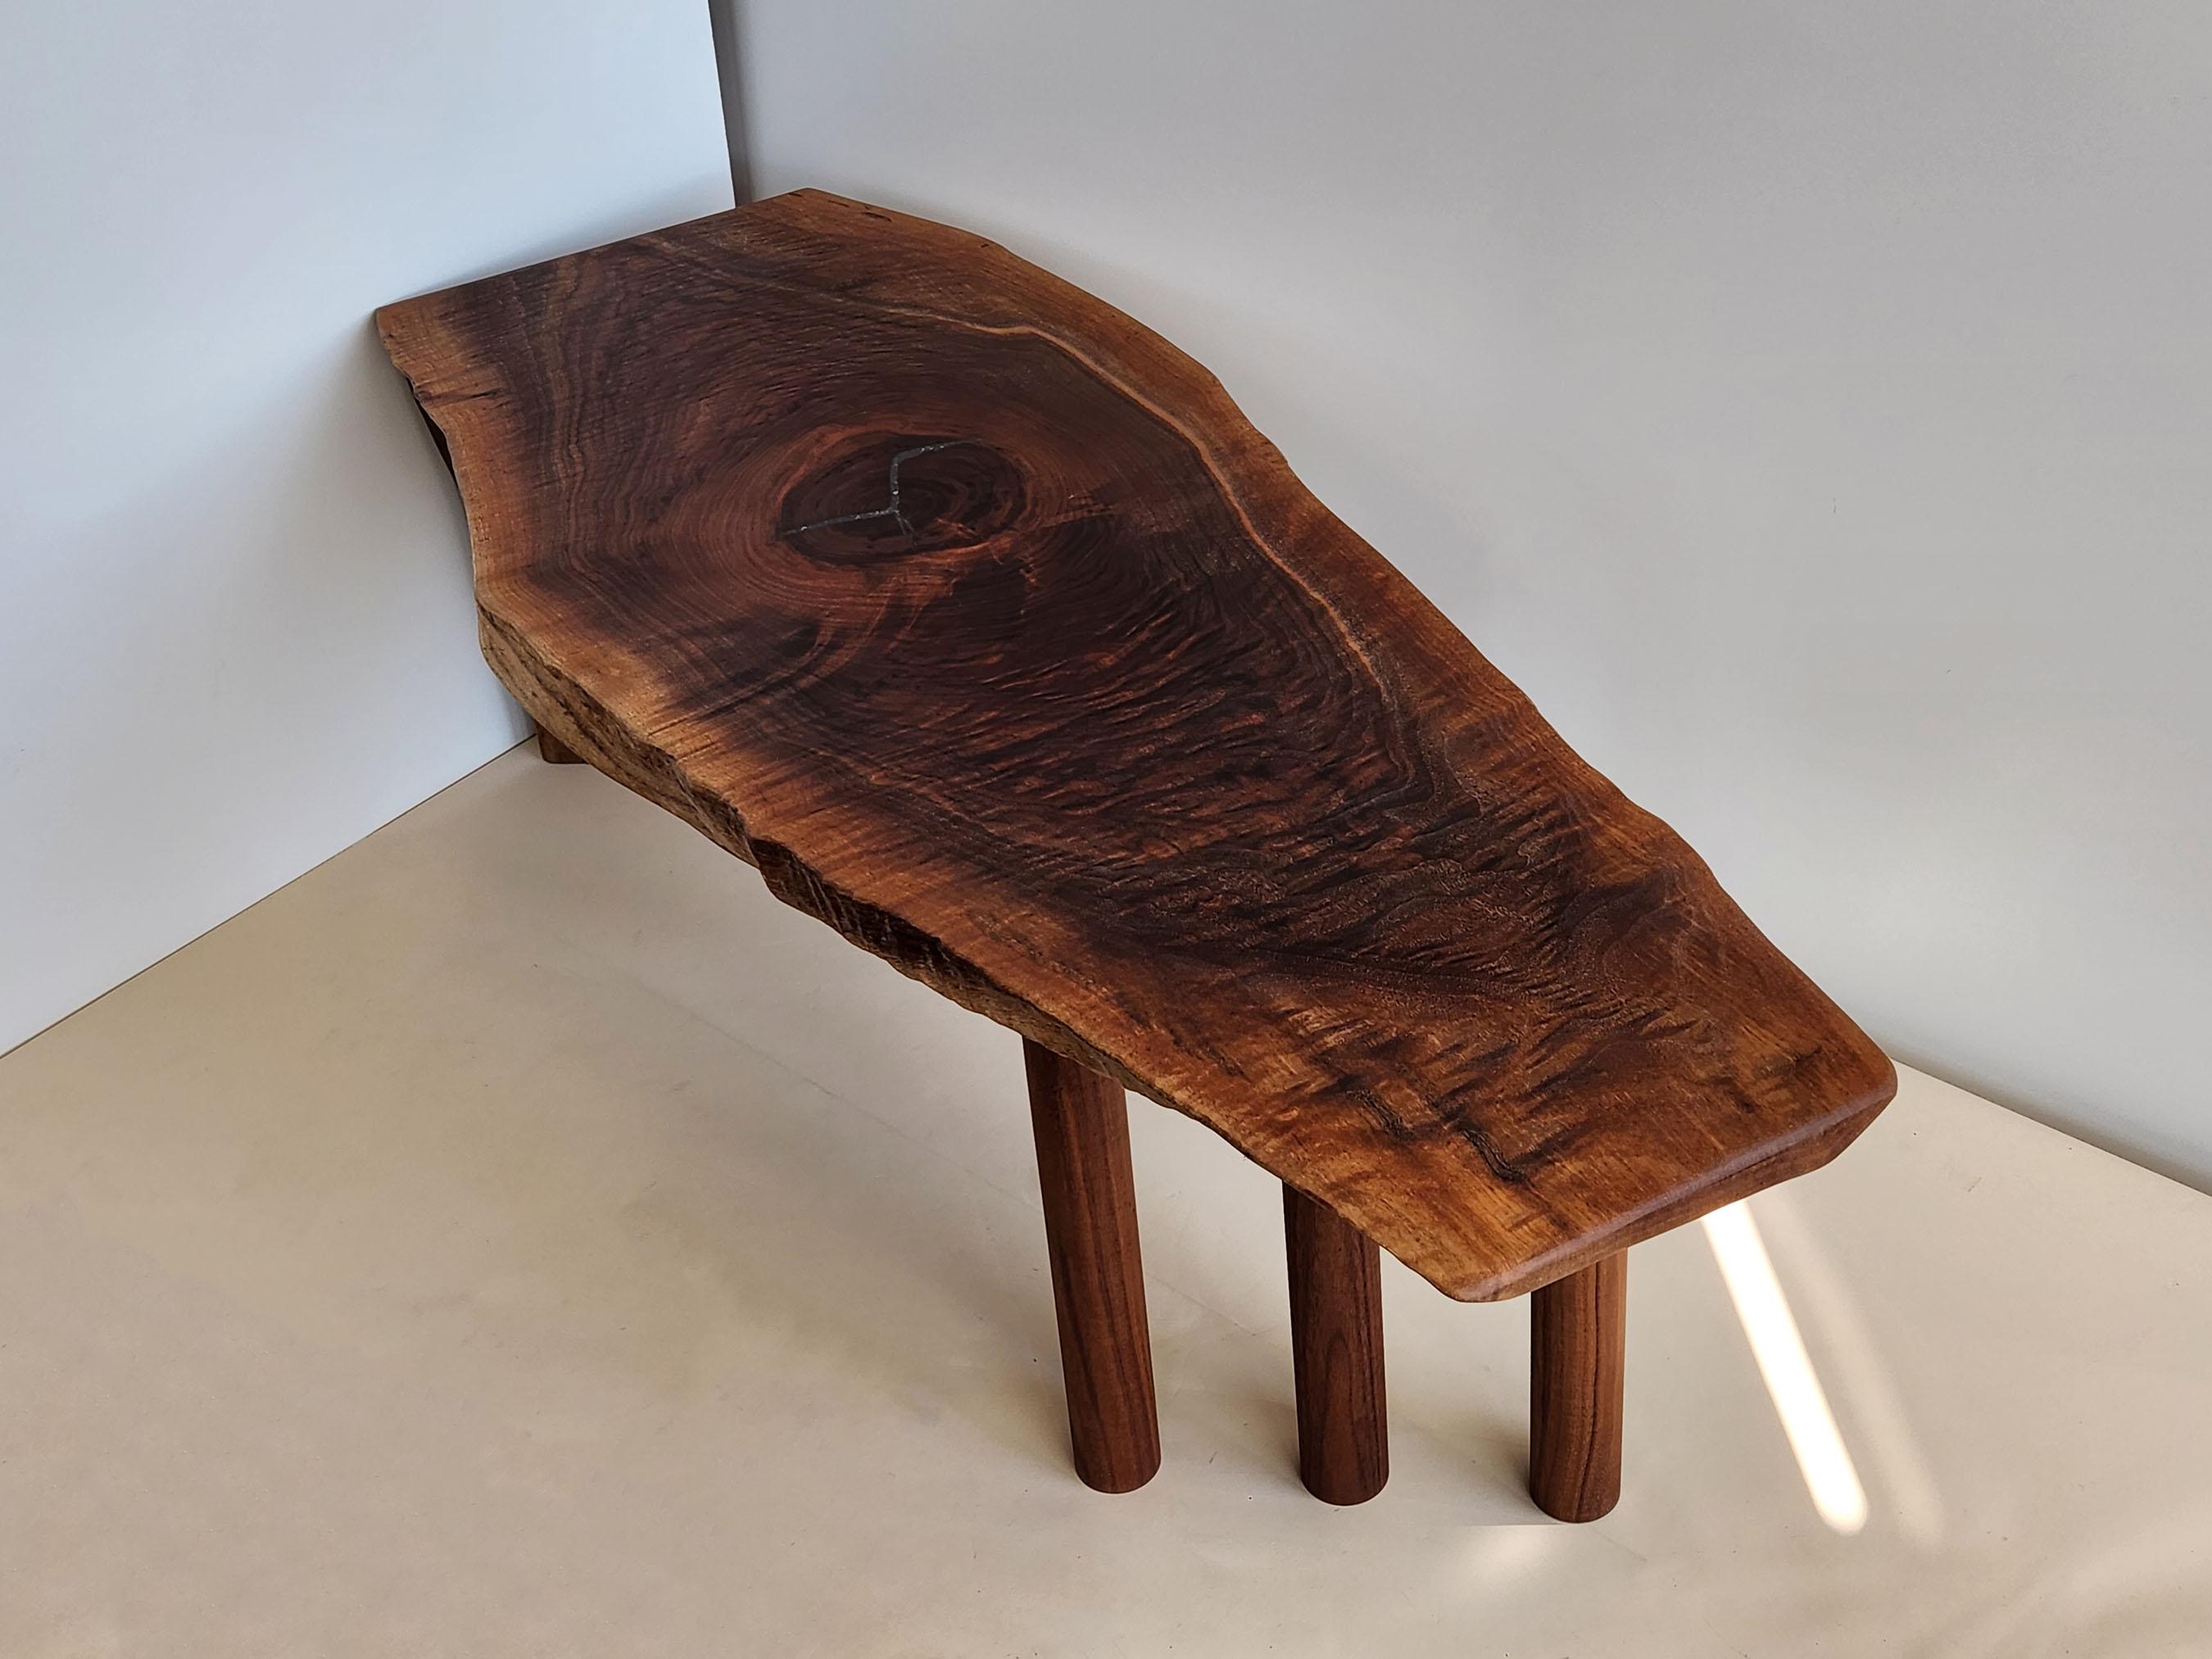 Cette magnifique table basse est fabriquée en bois de noyer noir, qui est sombre, dur, dense et à grain serré. Il est connu pour sa résistance, sa texture et sa couleur. Il se polit jusqu'à obtenir une finition extrêmement lisse. Le bois de noyer